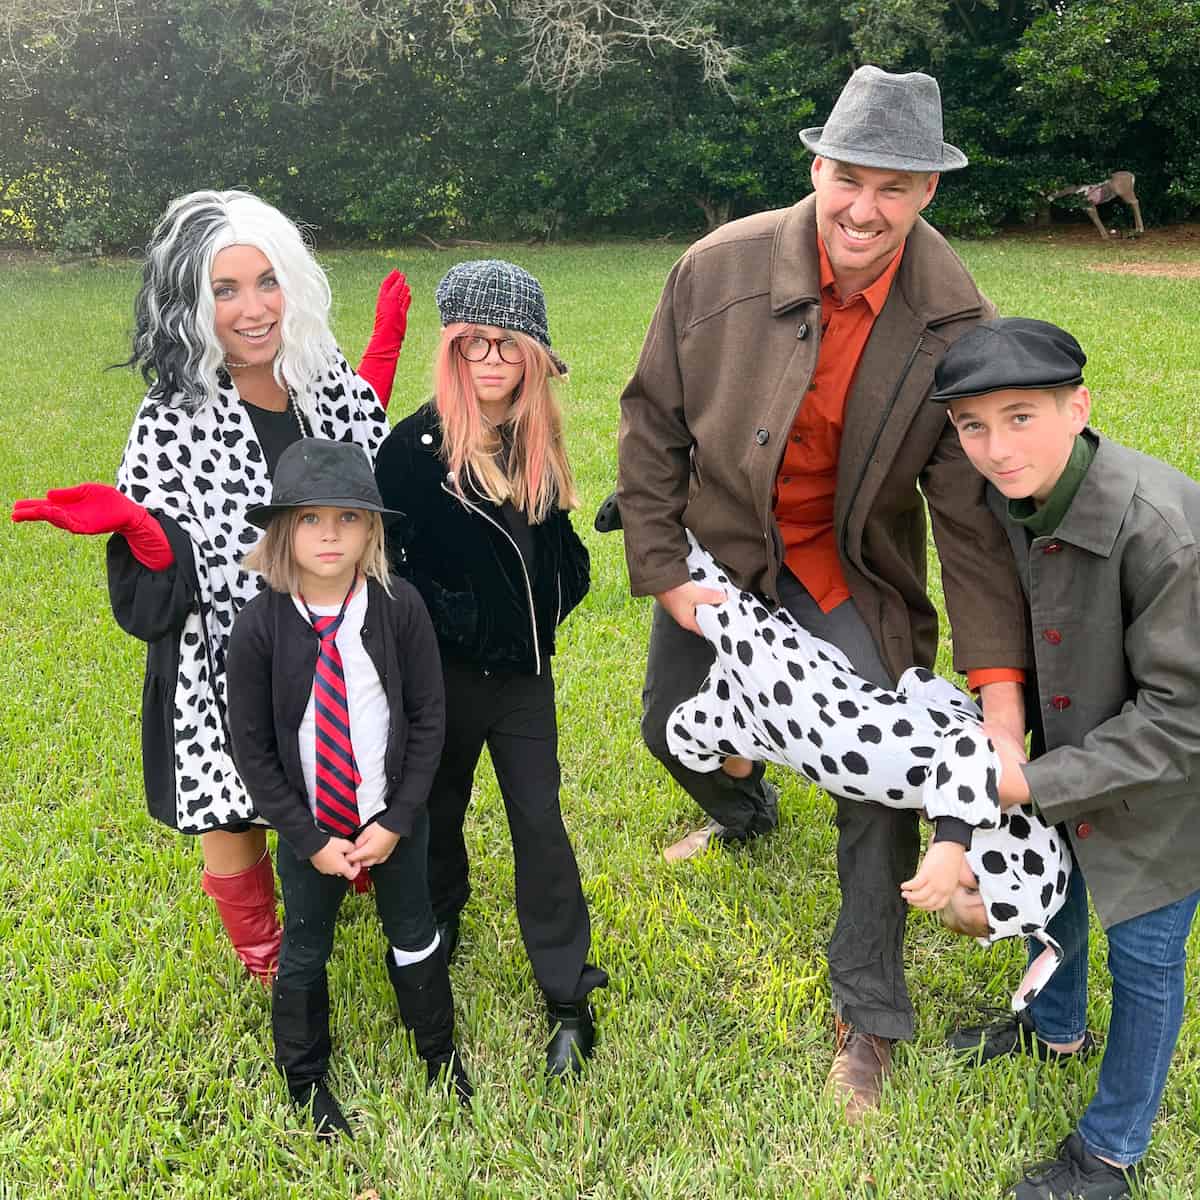 Cruella Family Costume Ideas for Halloween